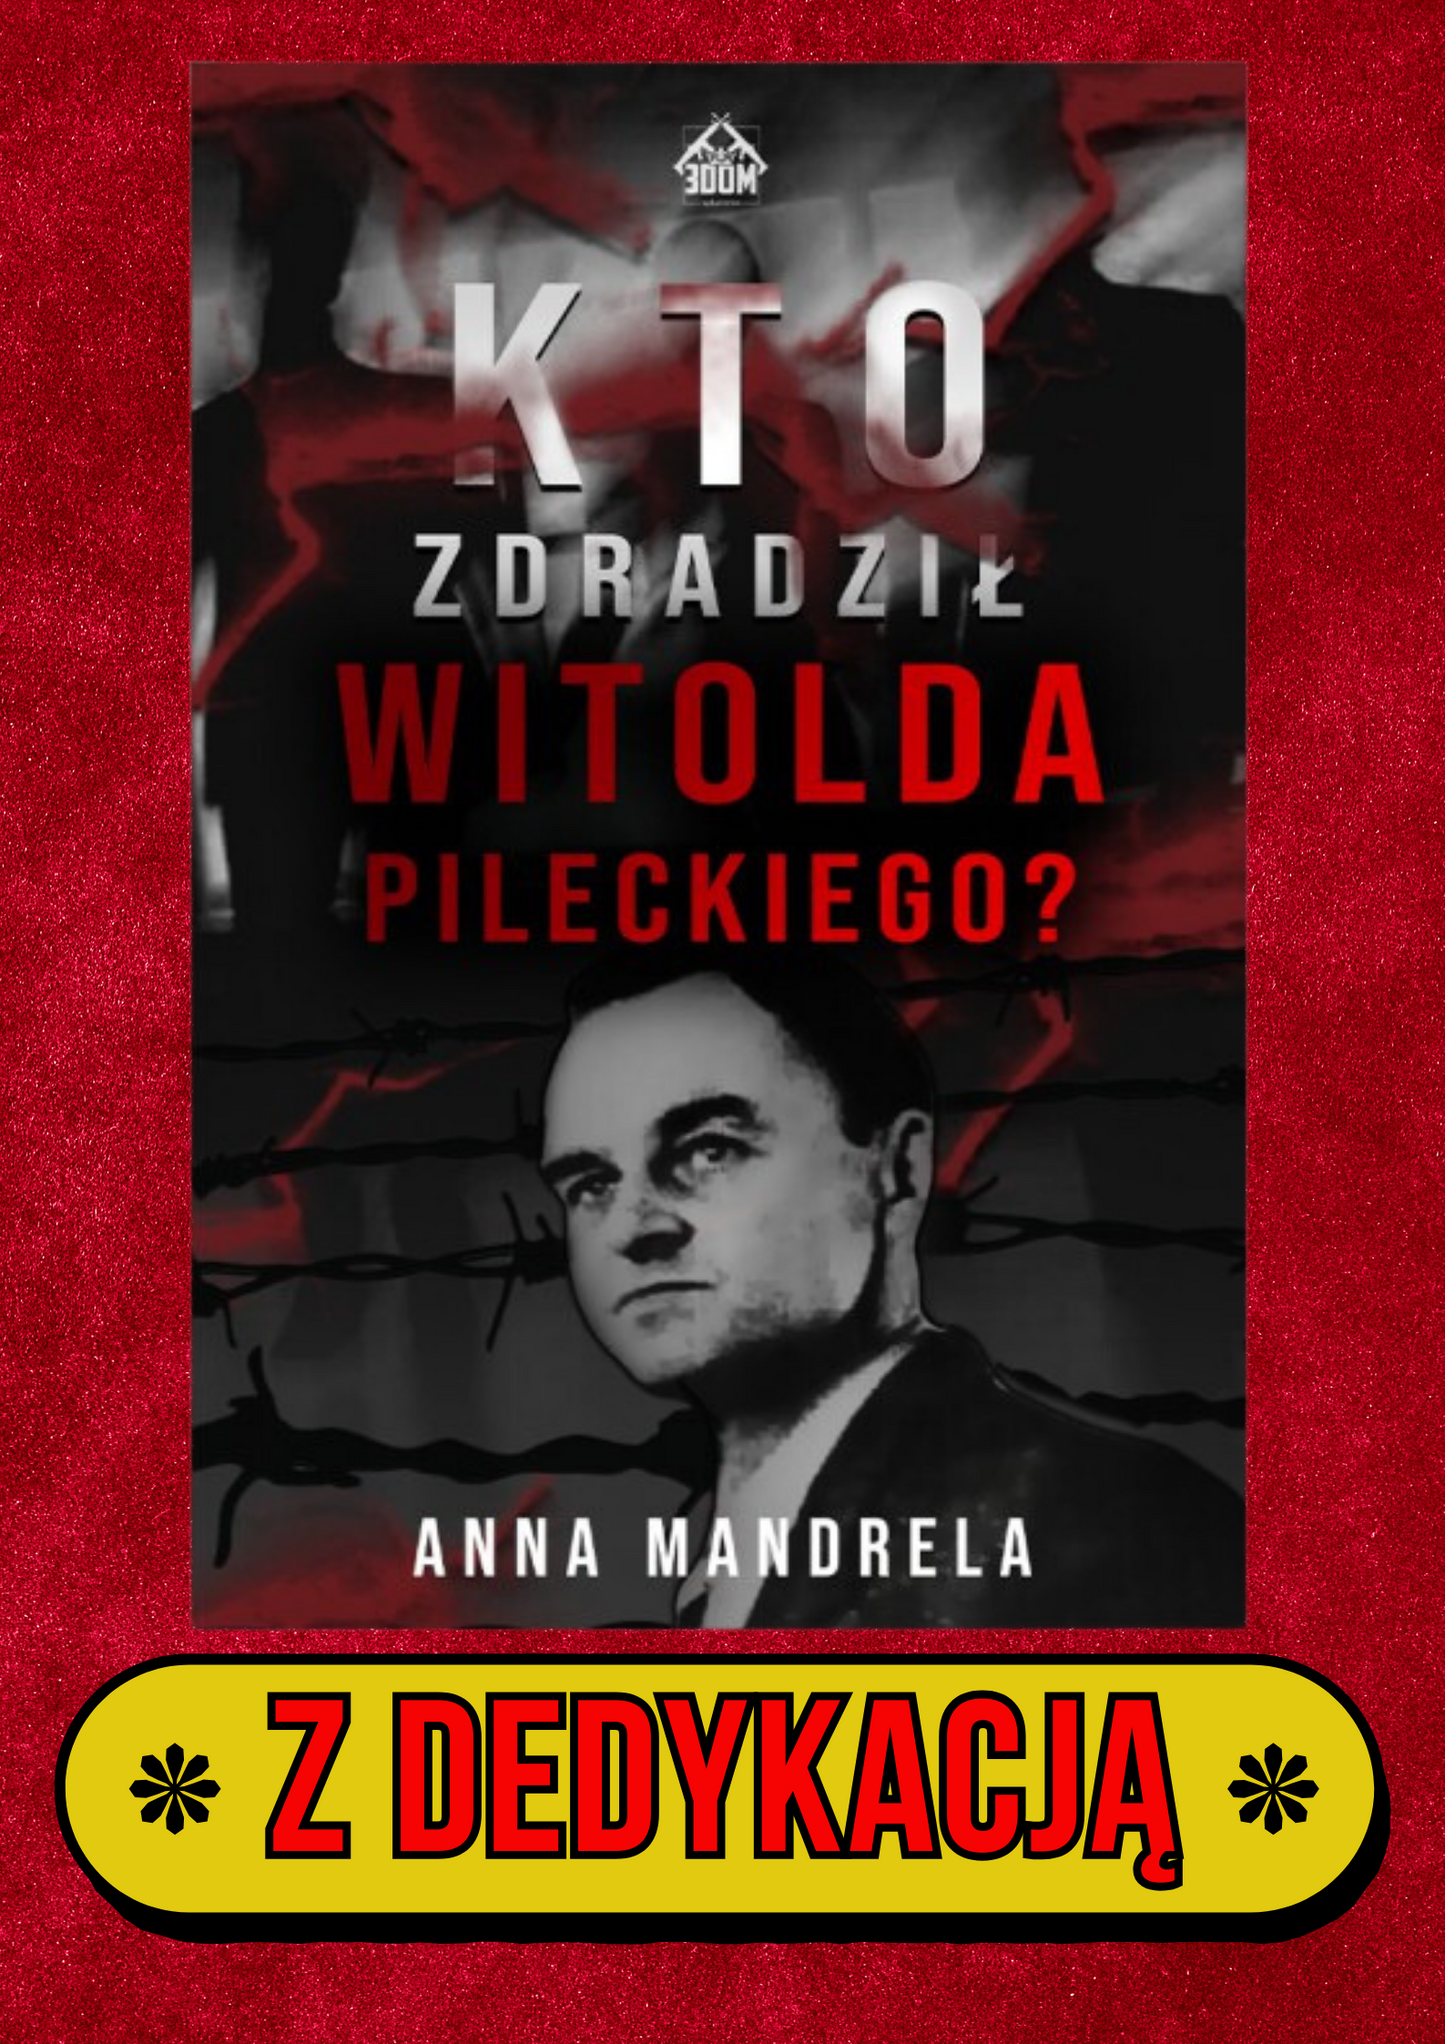 Anna Mandrela - Kto zdradził Witolda Pileckiego? + DEDYKACJA